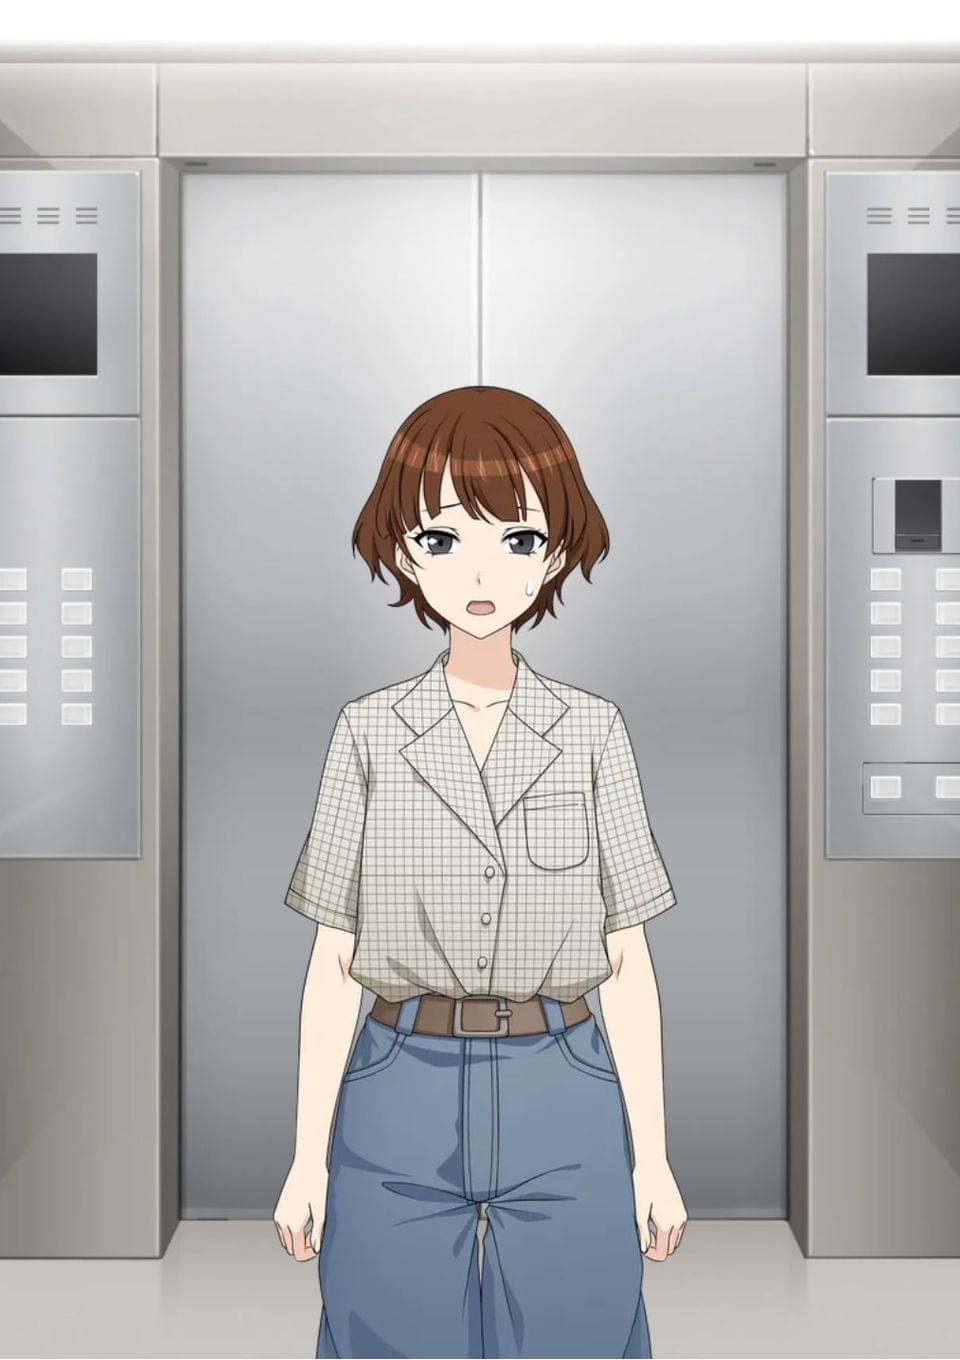 密室のエレベーター内で育まれるものとは？